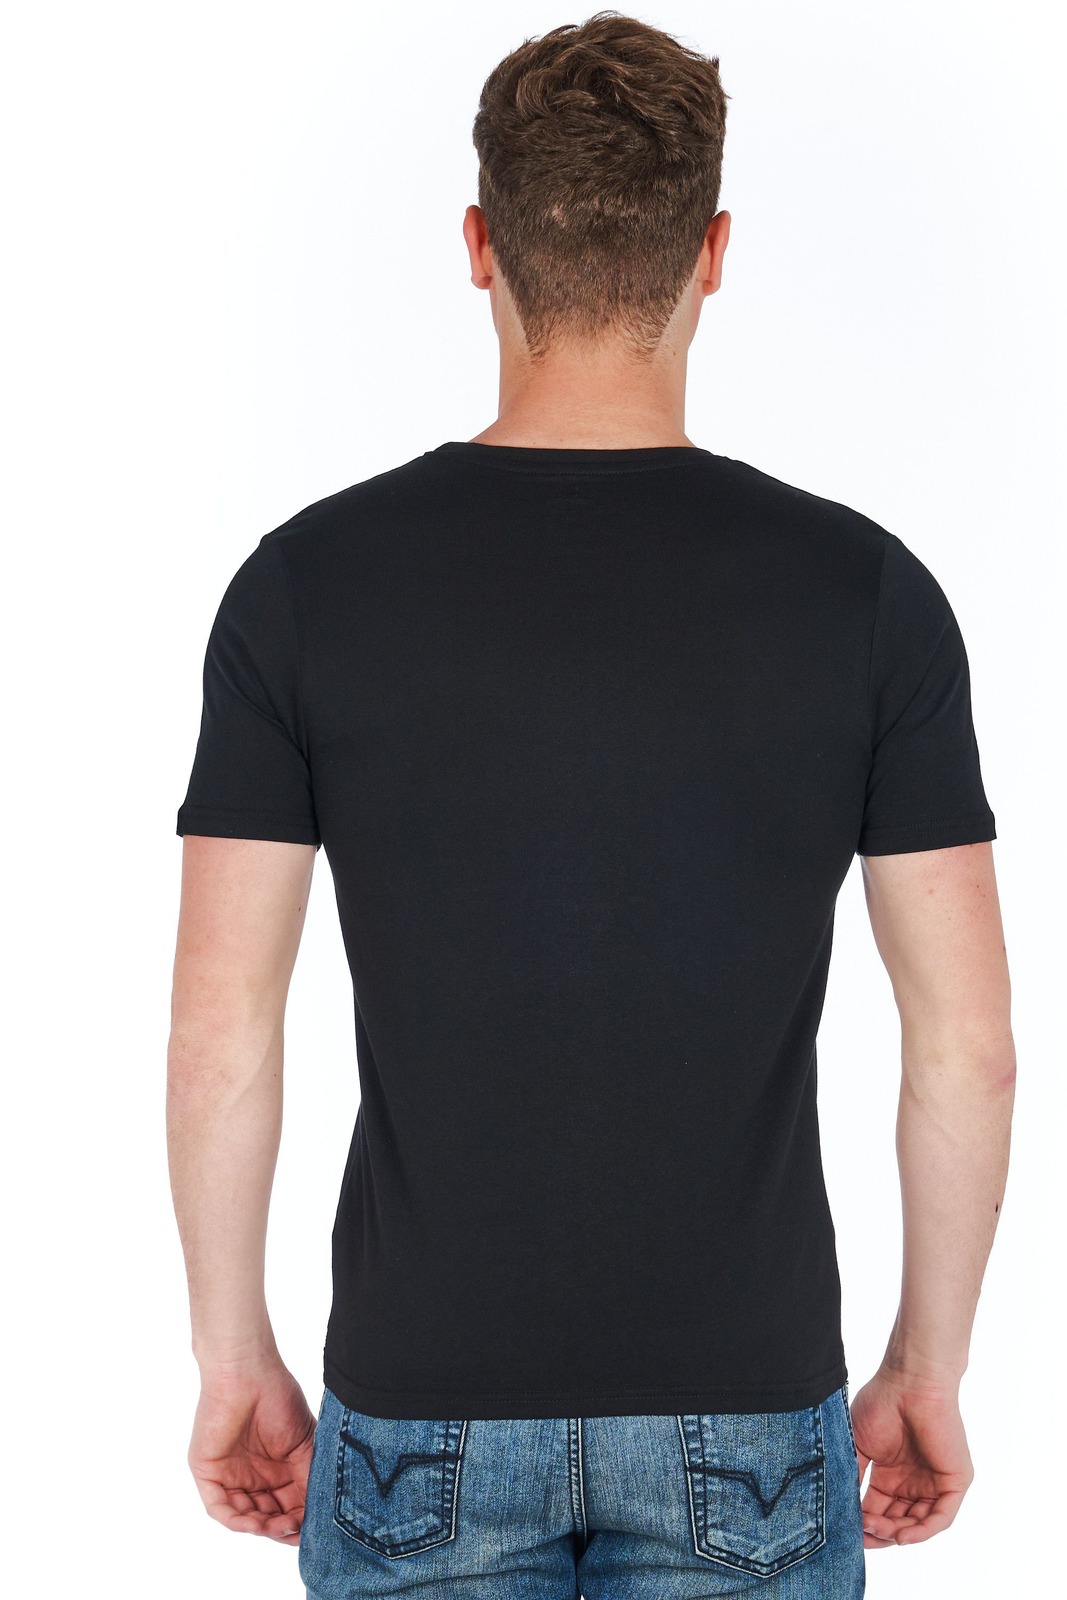 Jeckerson Schwarze T-Shirts für Herren - GEWÖHNLICH